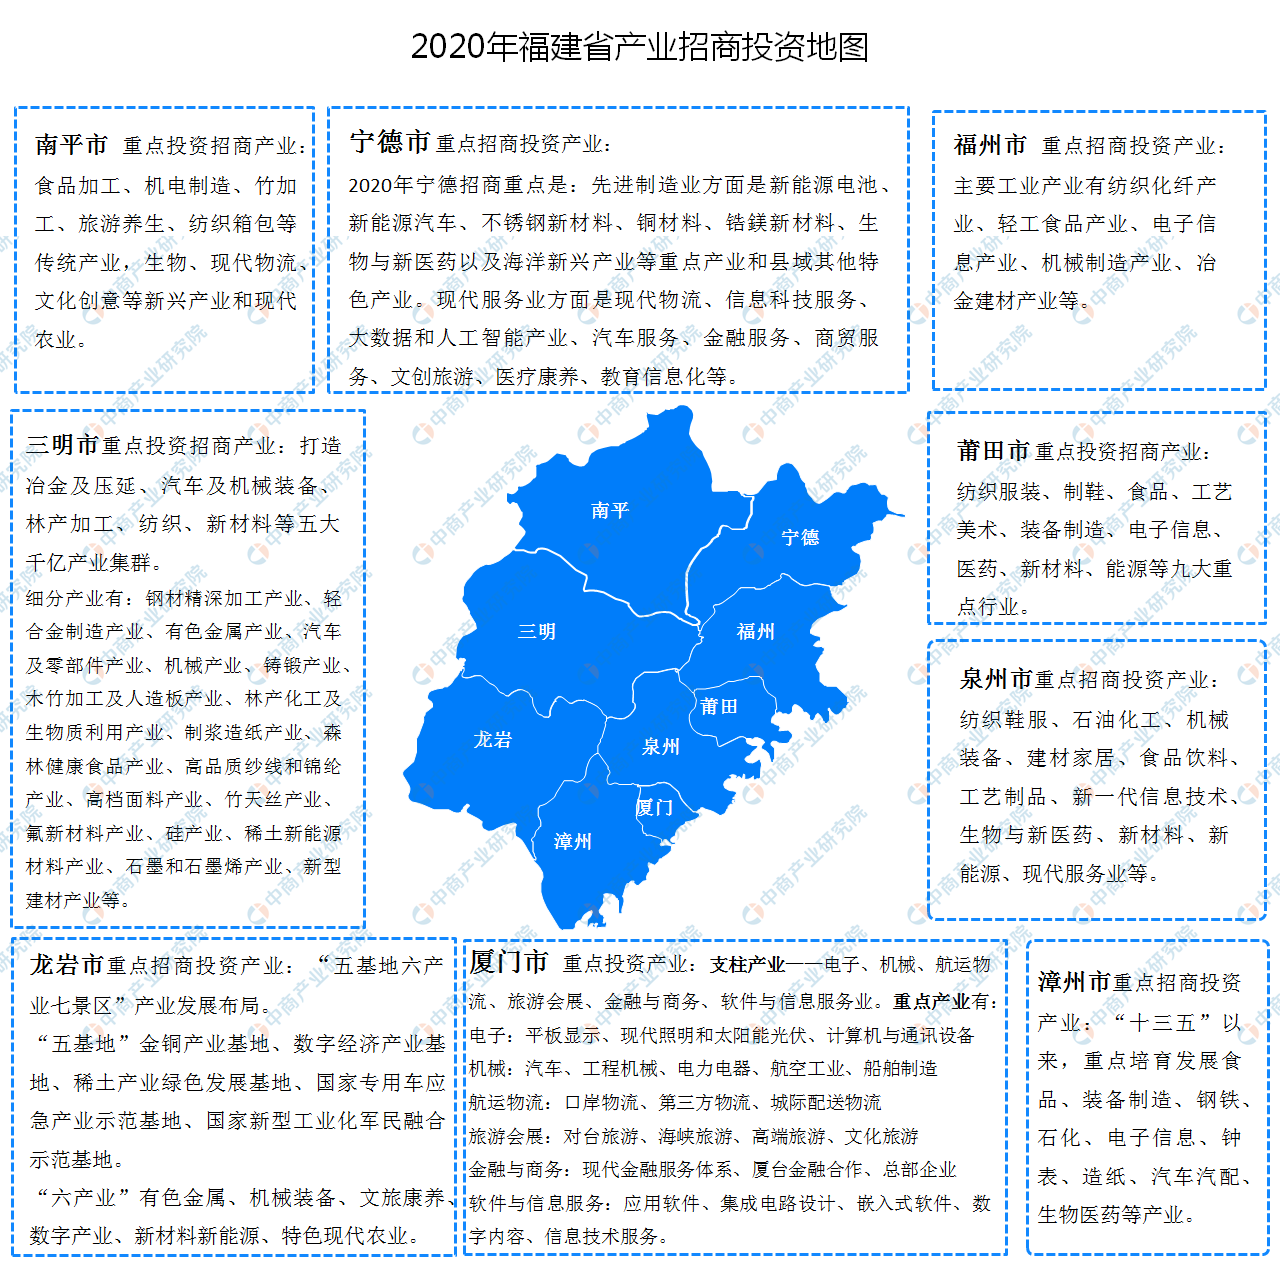 2020年福建省各地产业招商投资地图分析（附产业集群及开发区名单）